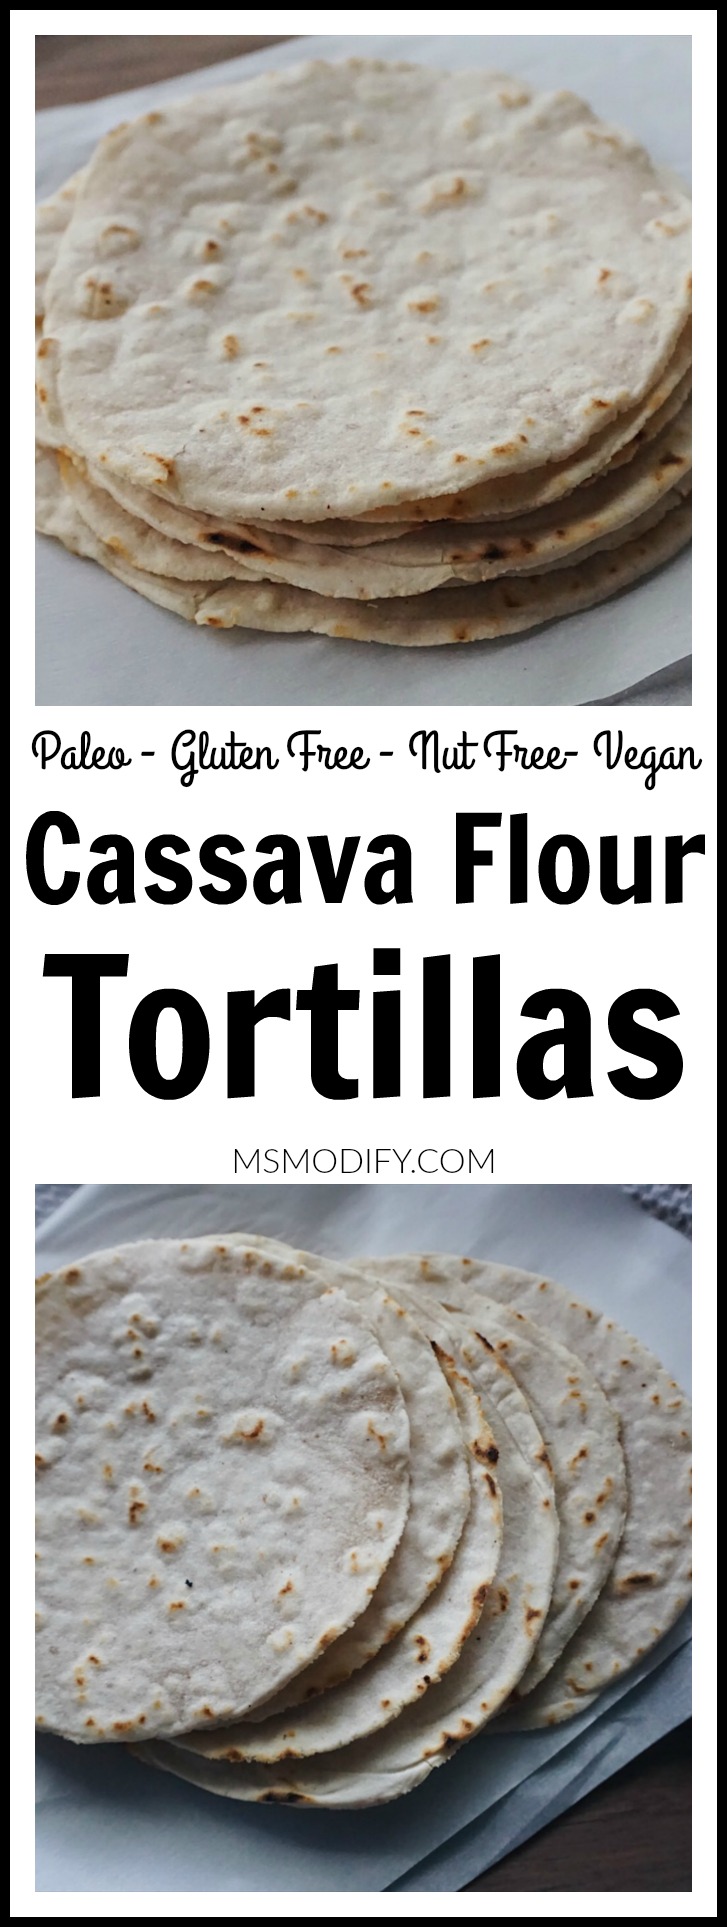 Cassava flour tortillas